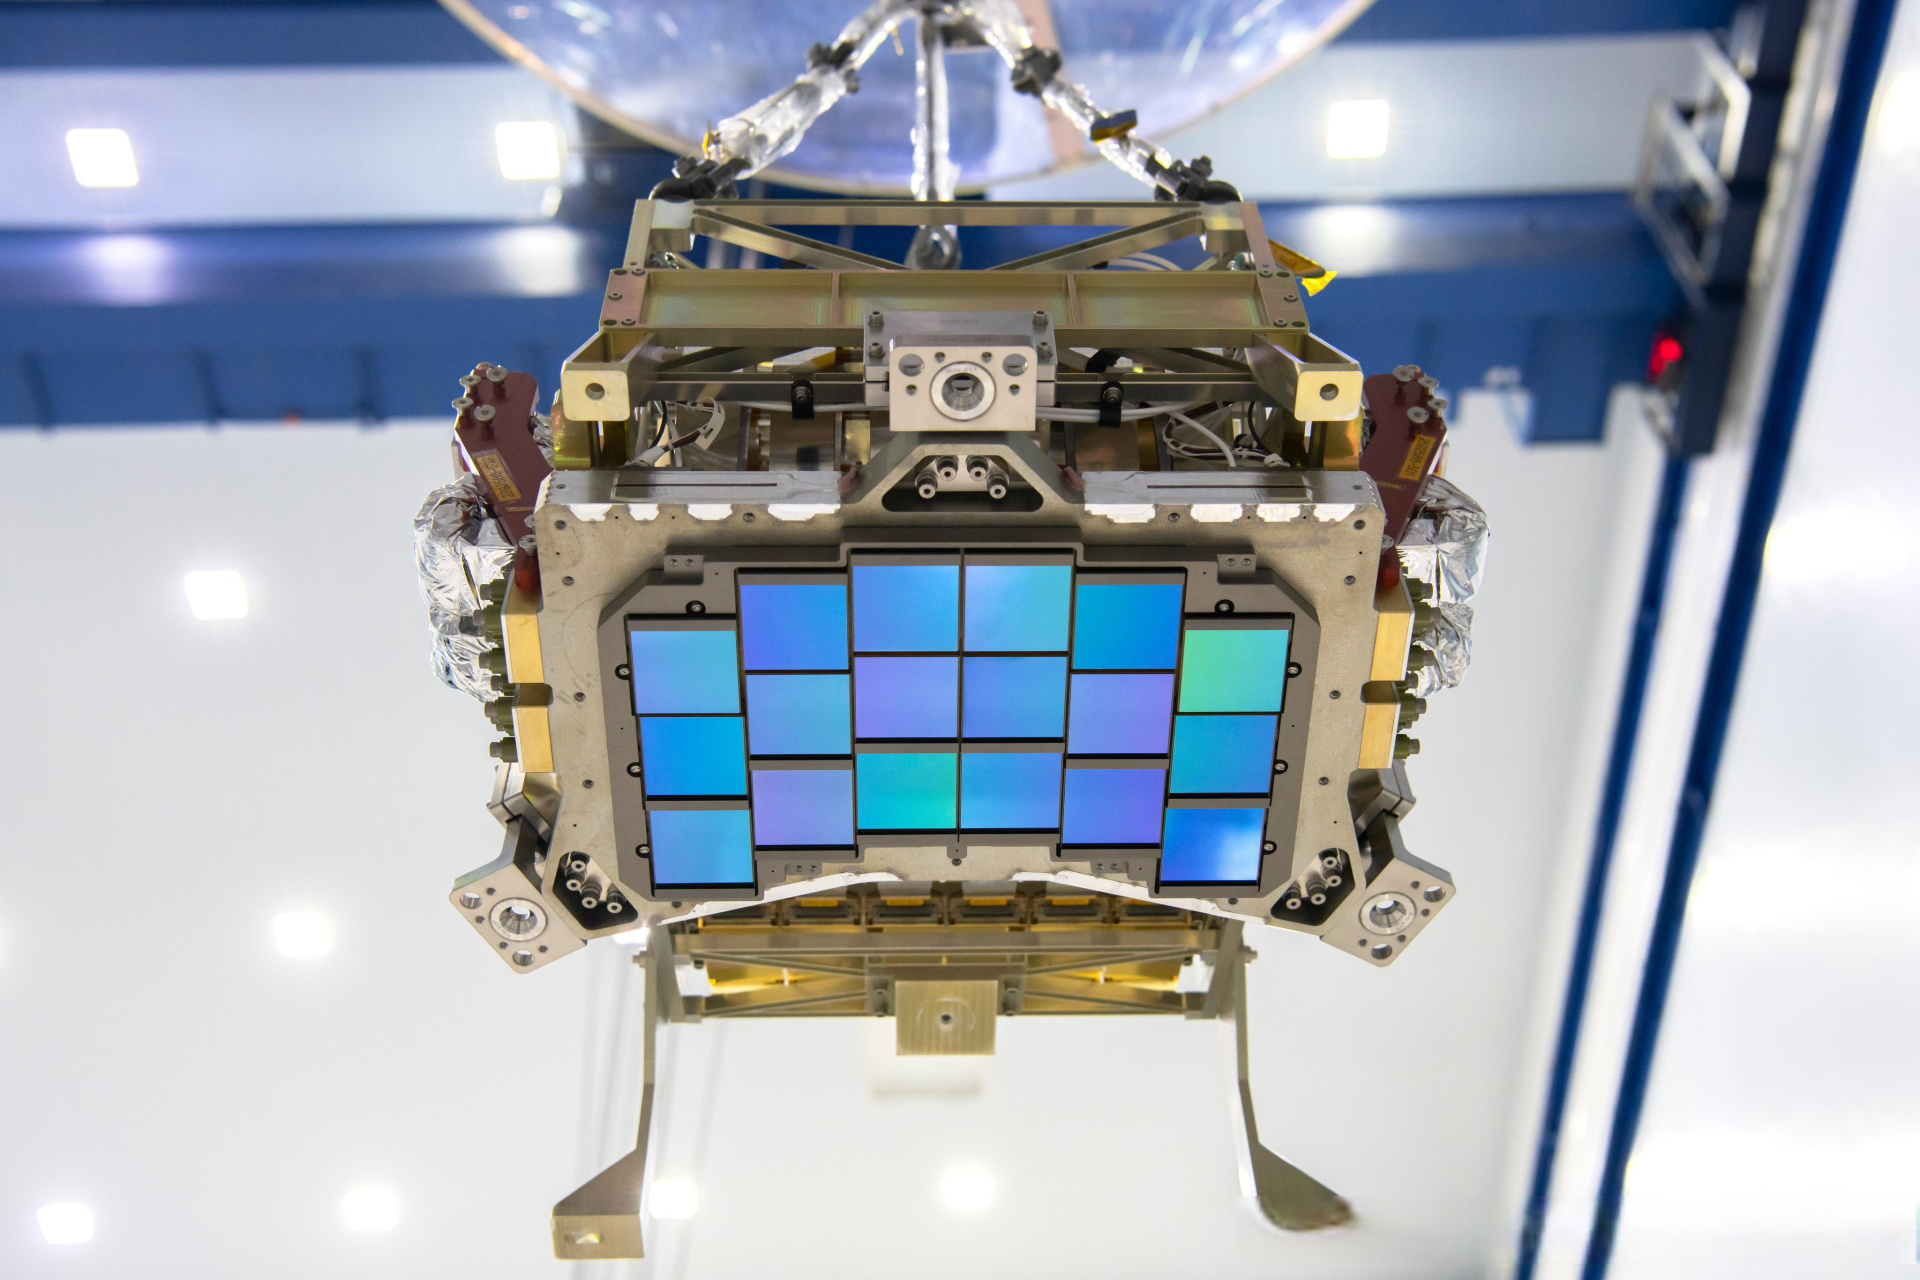 罗曼太空望远镜的红外焦平面系统,18个传感器的分辨率接近3亿像素